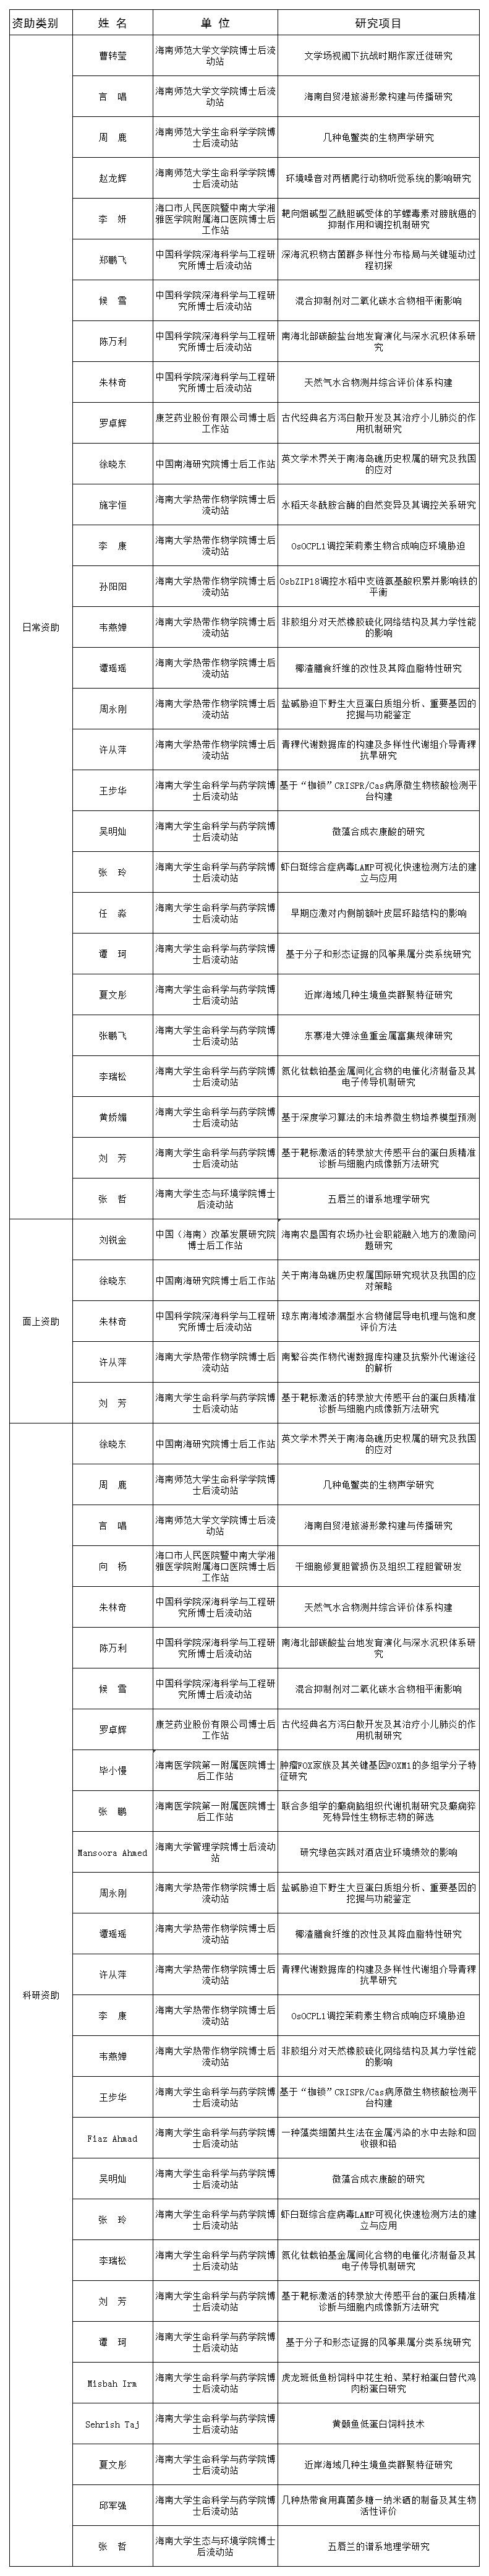 2021年海南省博士后资助名单一览表.jpg